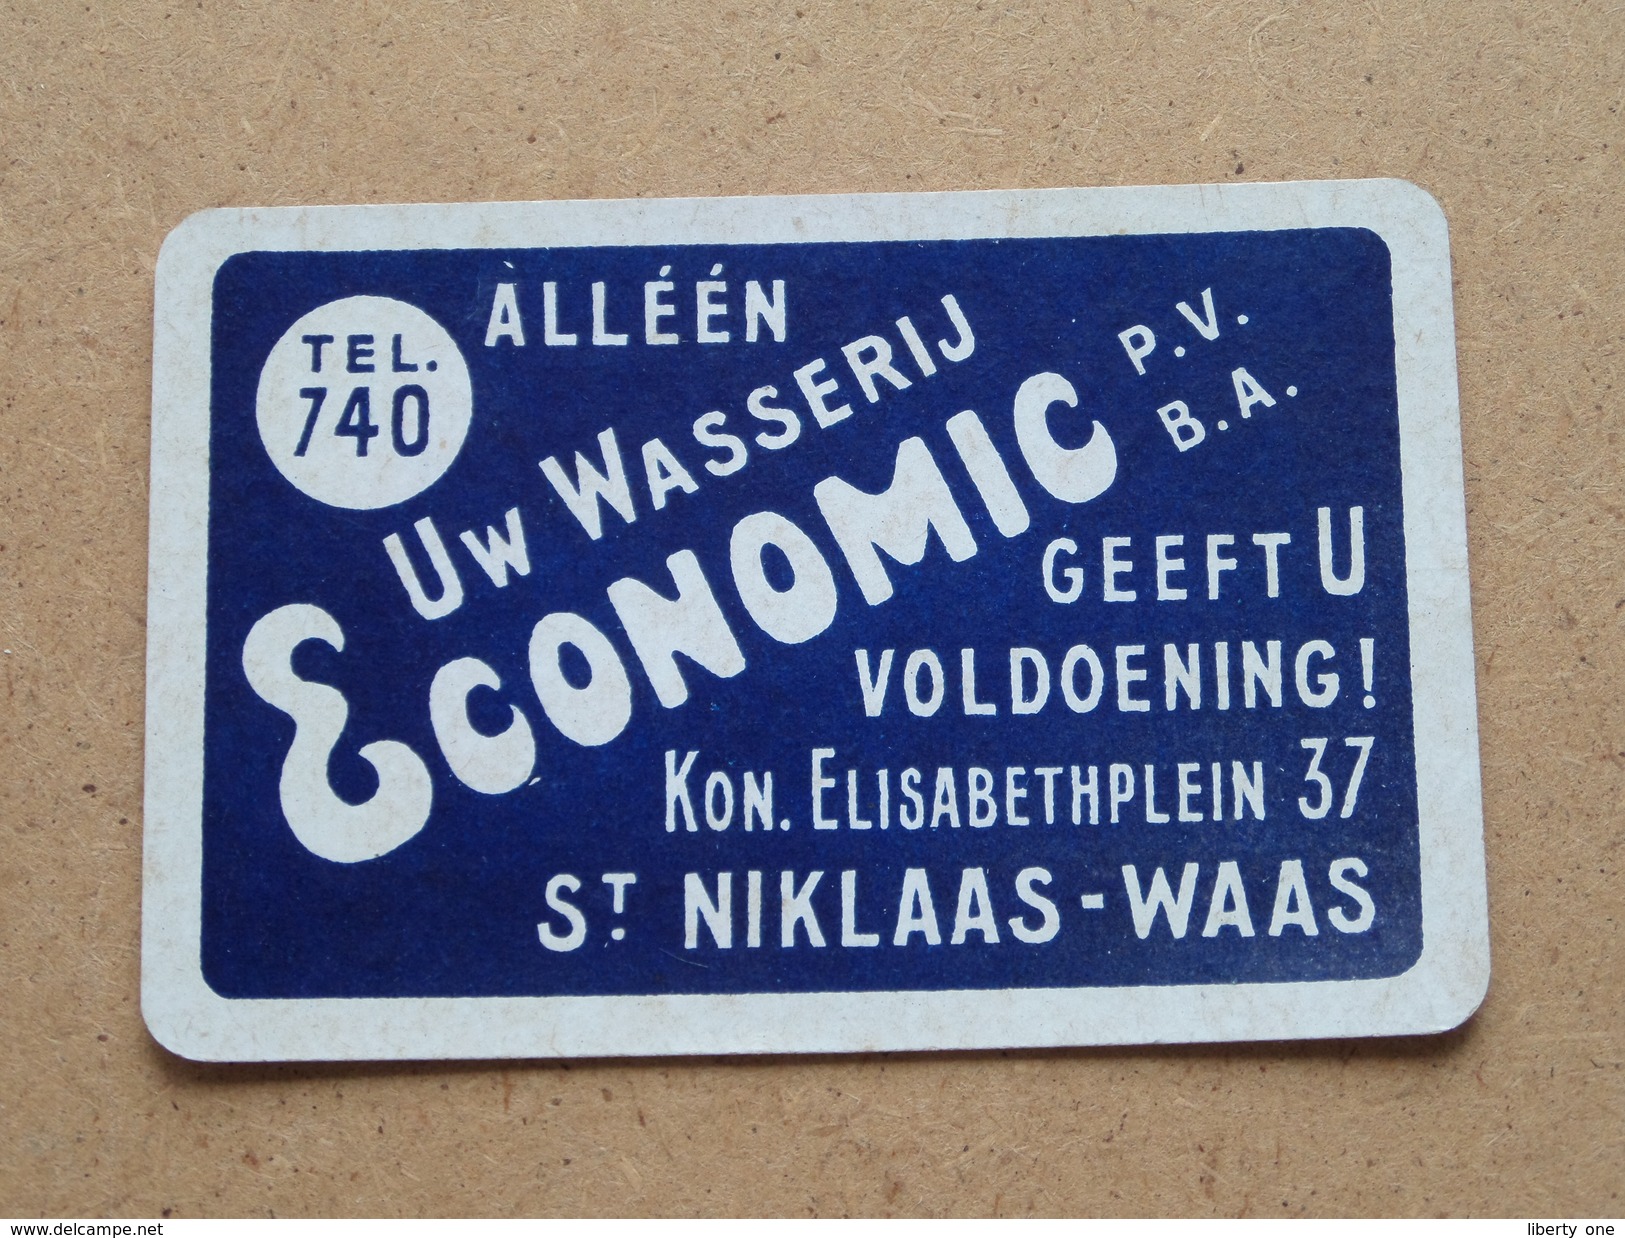 Alléén Uw Wasserij ECONOMIC Geeft U Voldoening St. Niklaas-Waas ( JOKER ) - ( Details - Zie Foto´s Voor En Achter ) !! - Playing Cards (classic)